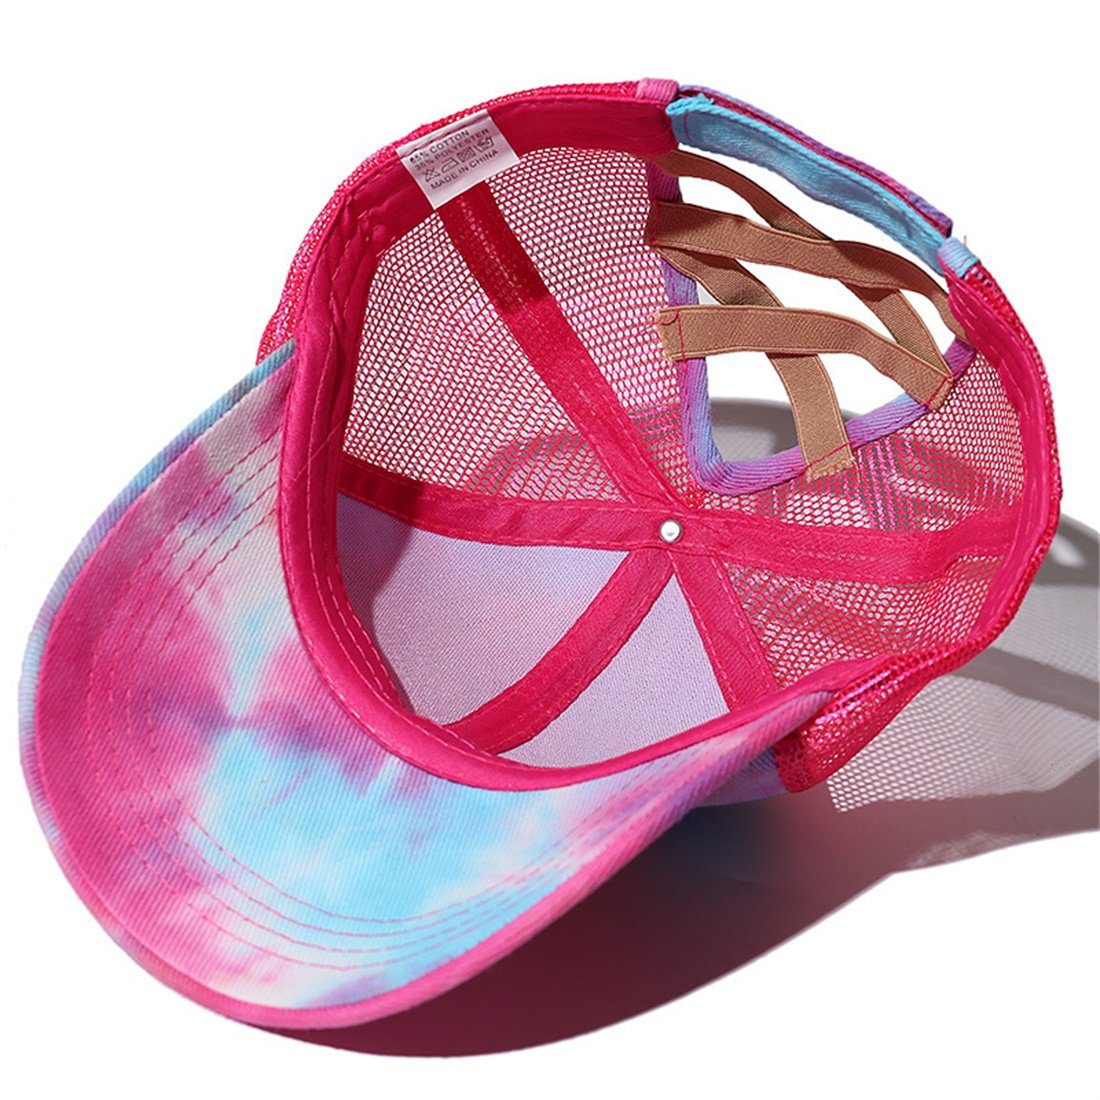 DÖRÖY Sonnenschutz und Damen-Baseballkappe Cap mit Sommerliche Pferdeschwanz Baseball Rosa